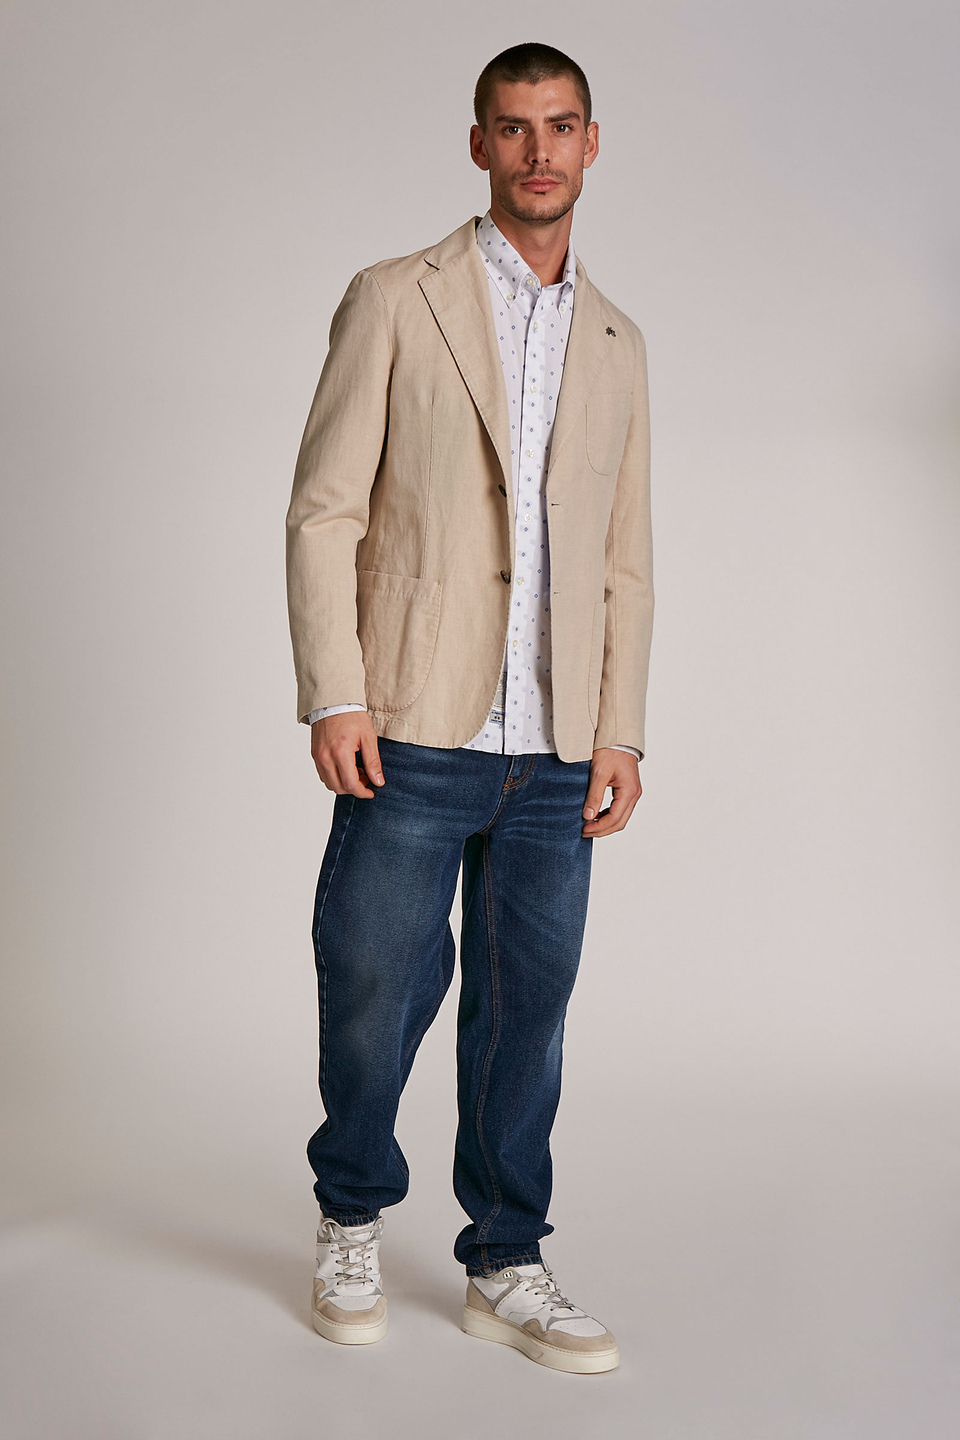 Veste homme style blazer en mélange de coton et lin coupe classique | La Martina - Official Online Shop